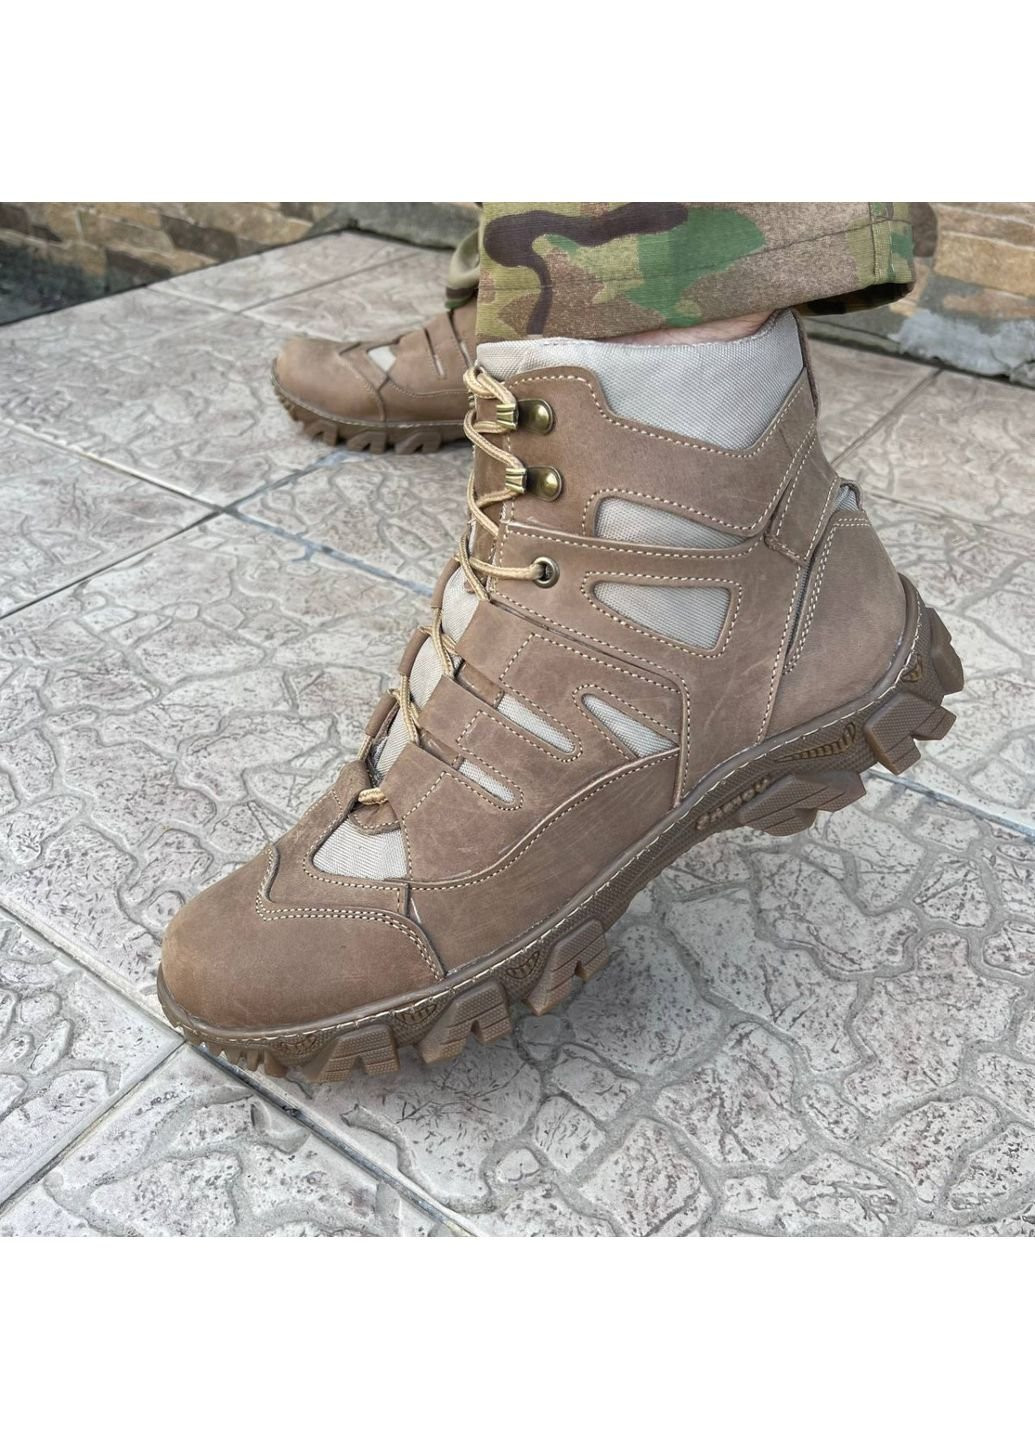 Коричневые осенние ботинки военные тактические всу (зсу) 7529 44 р 29 см коричневые KNF